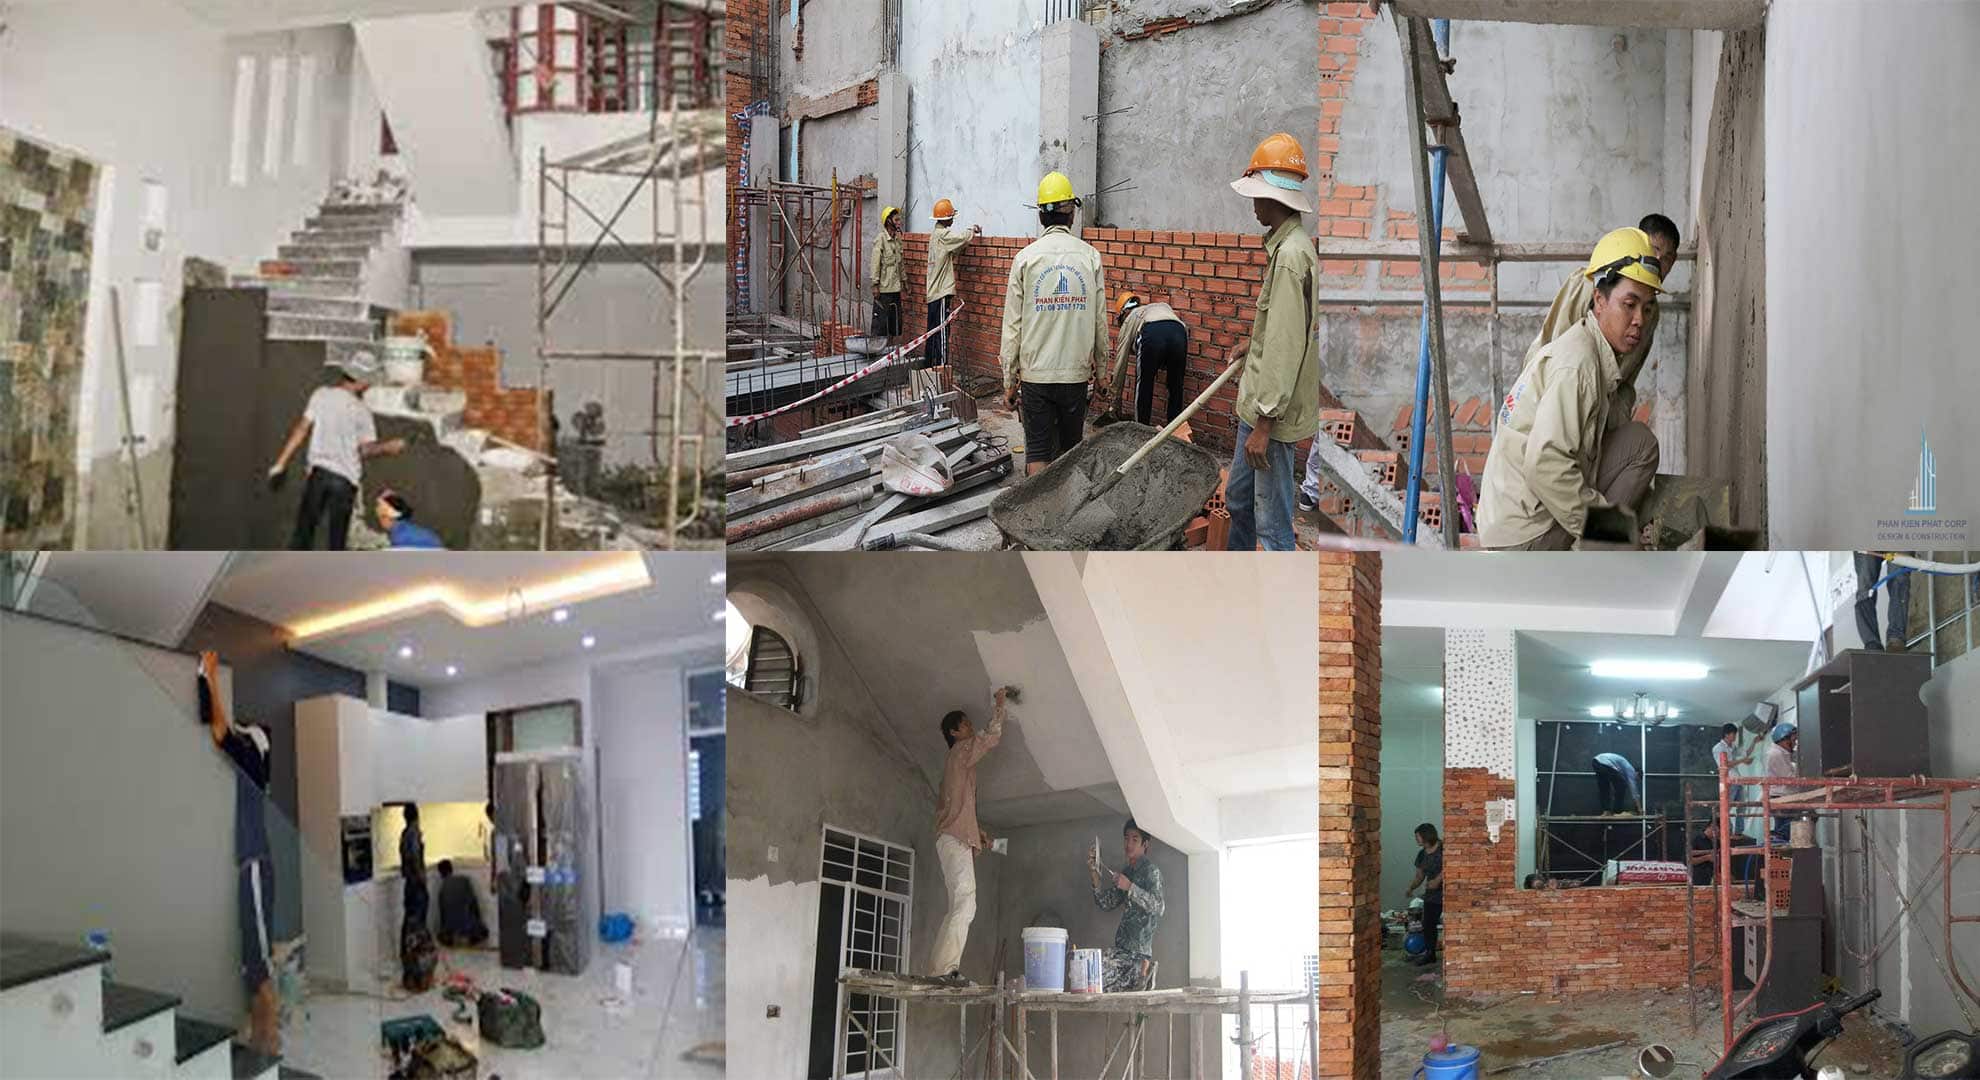 Thợ sửa chữa cải tạo nhà chuyên nghiệp tại Hà Nội